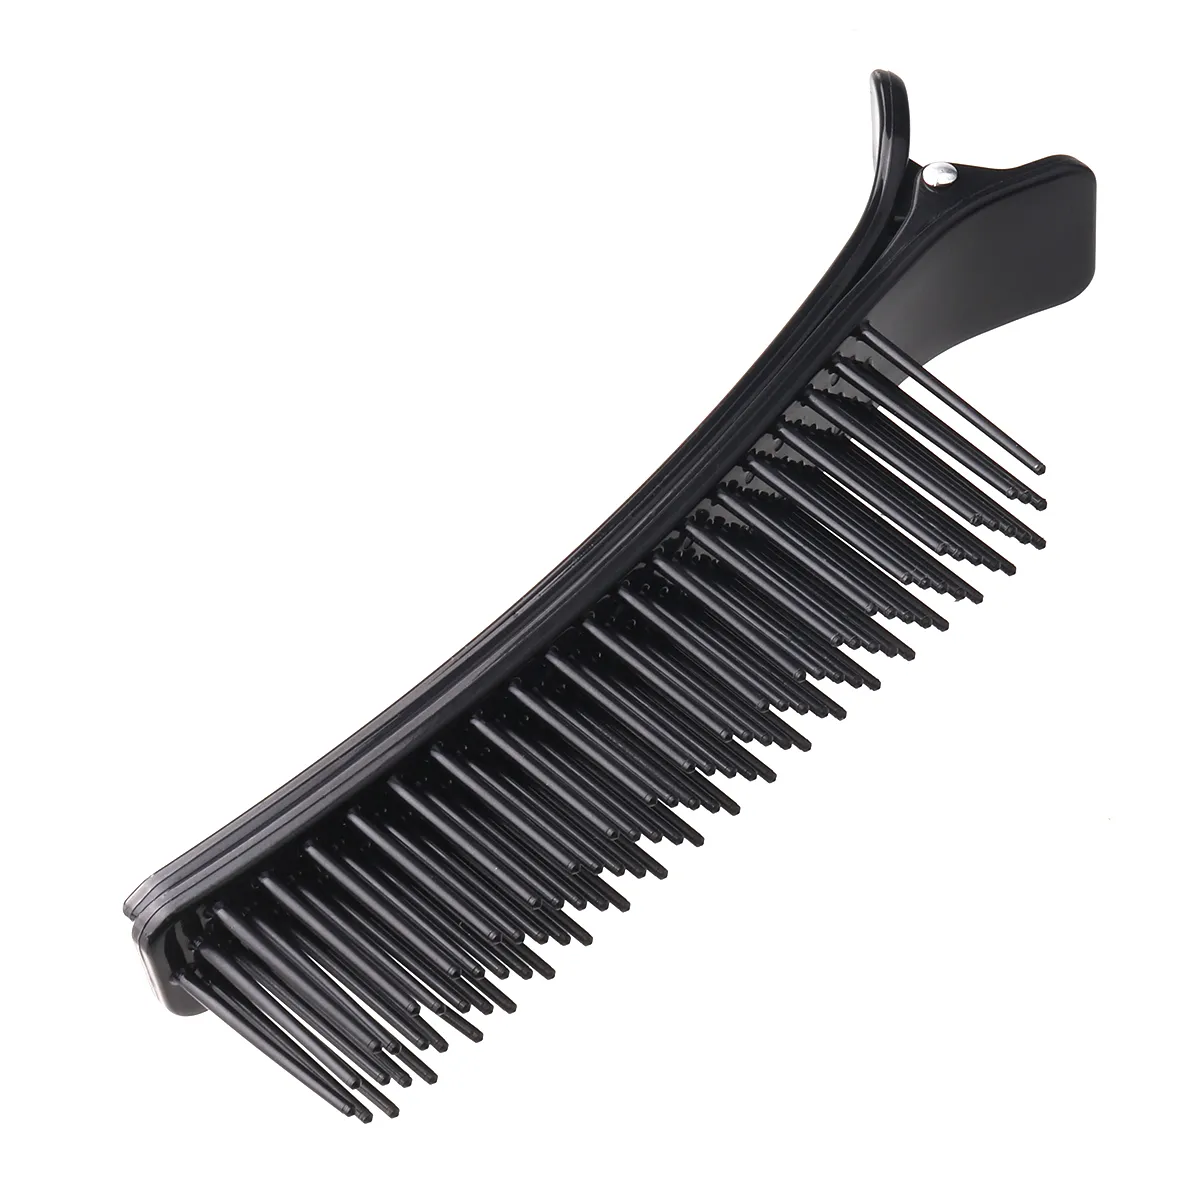 Профессиональные зажимы для волос, зажимы для парикмахерских услуг, расческа для стрижки, салонная сушка, химическая завивка, окрашивание, инструмент для укладки волос2694346